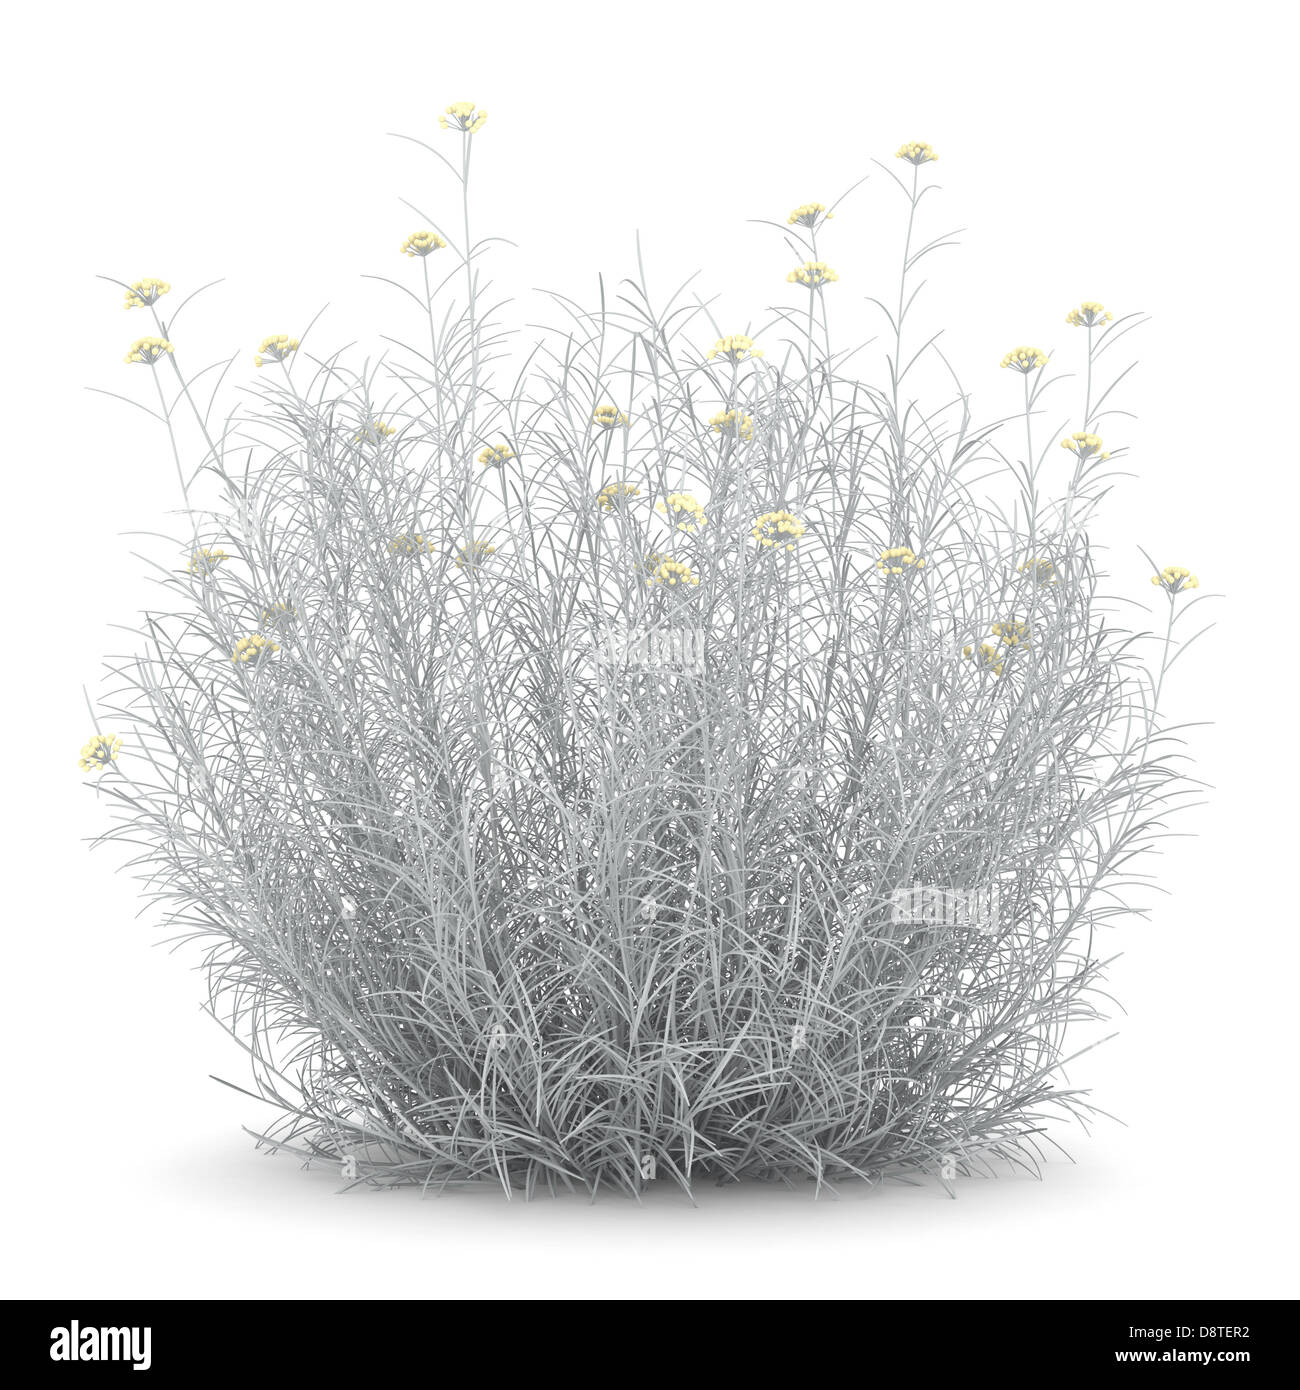 helichrysum bush isolated on white background Stock Photo